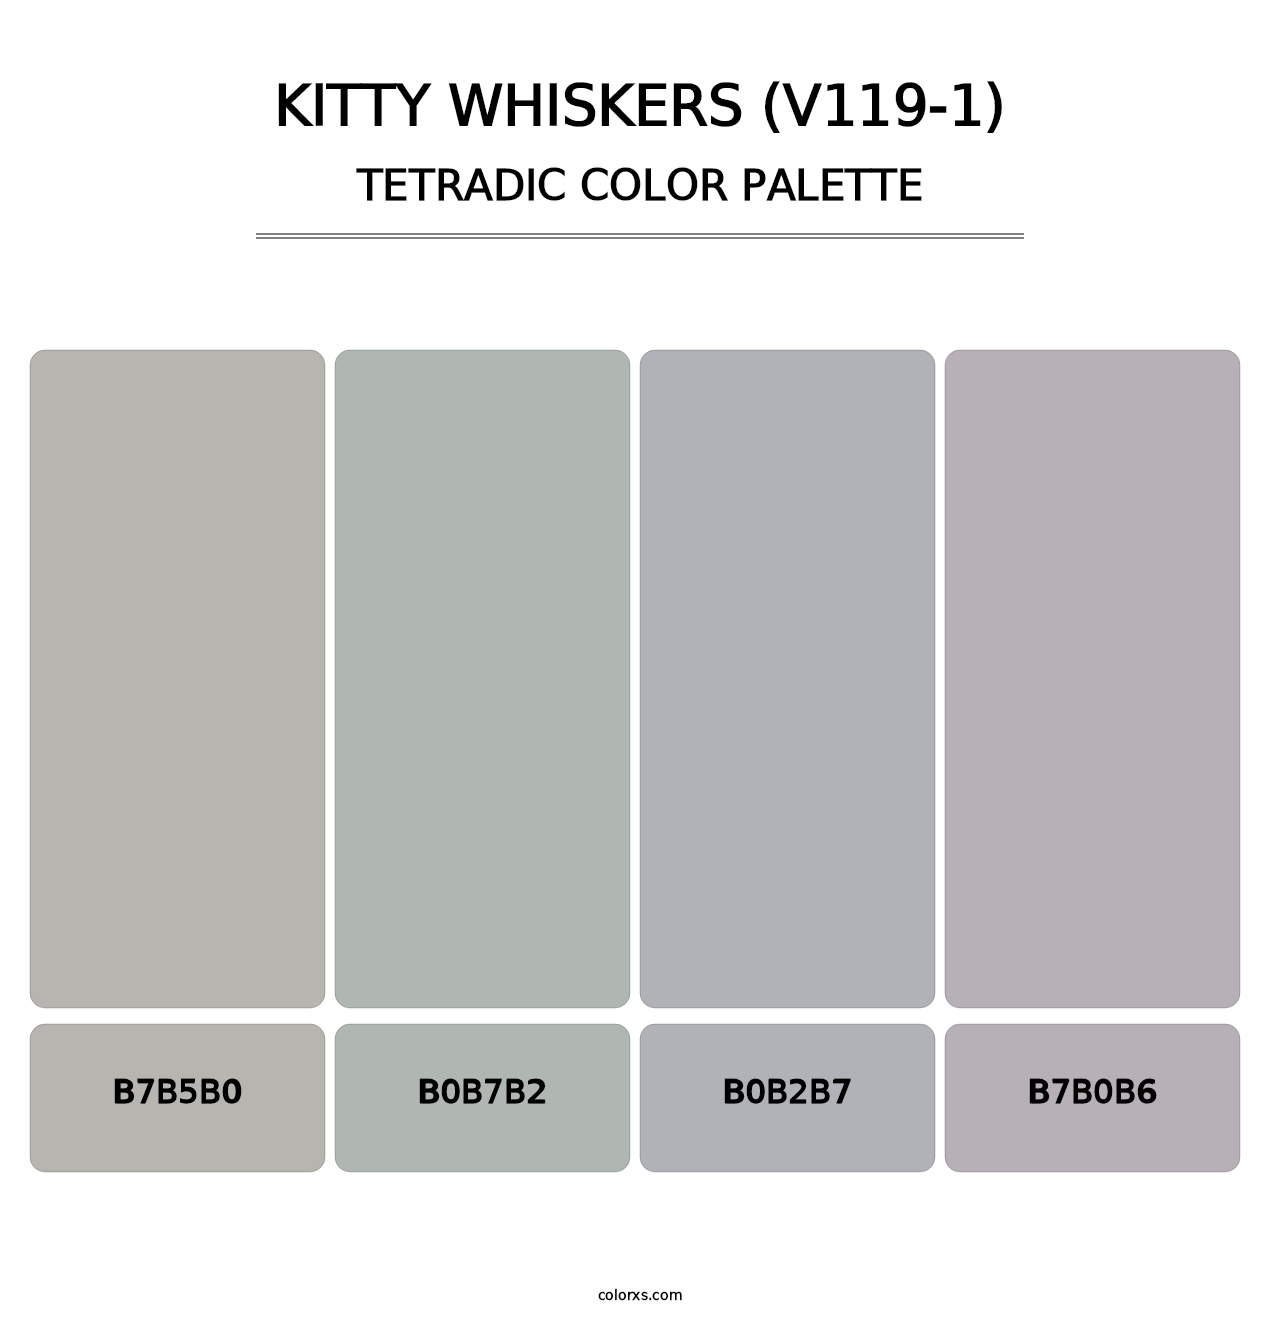 Kitty Whiskers (V119-1) - Tetradic Color Palette